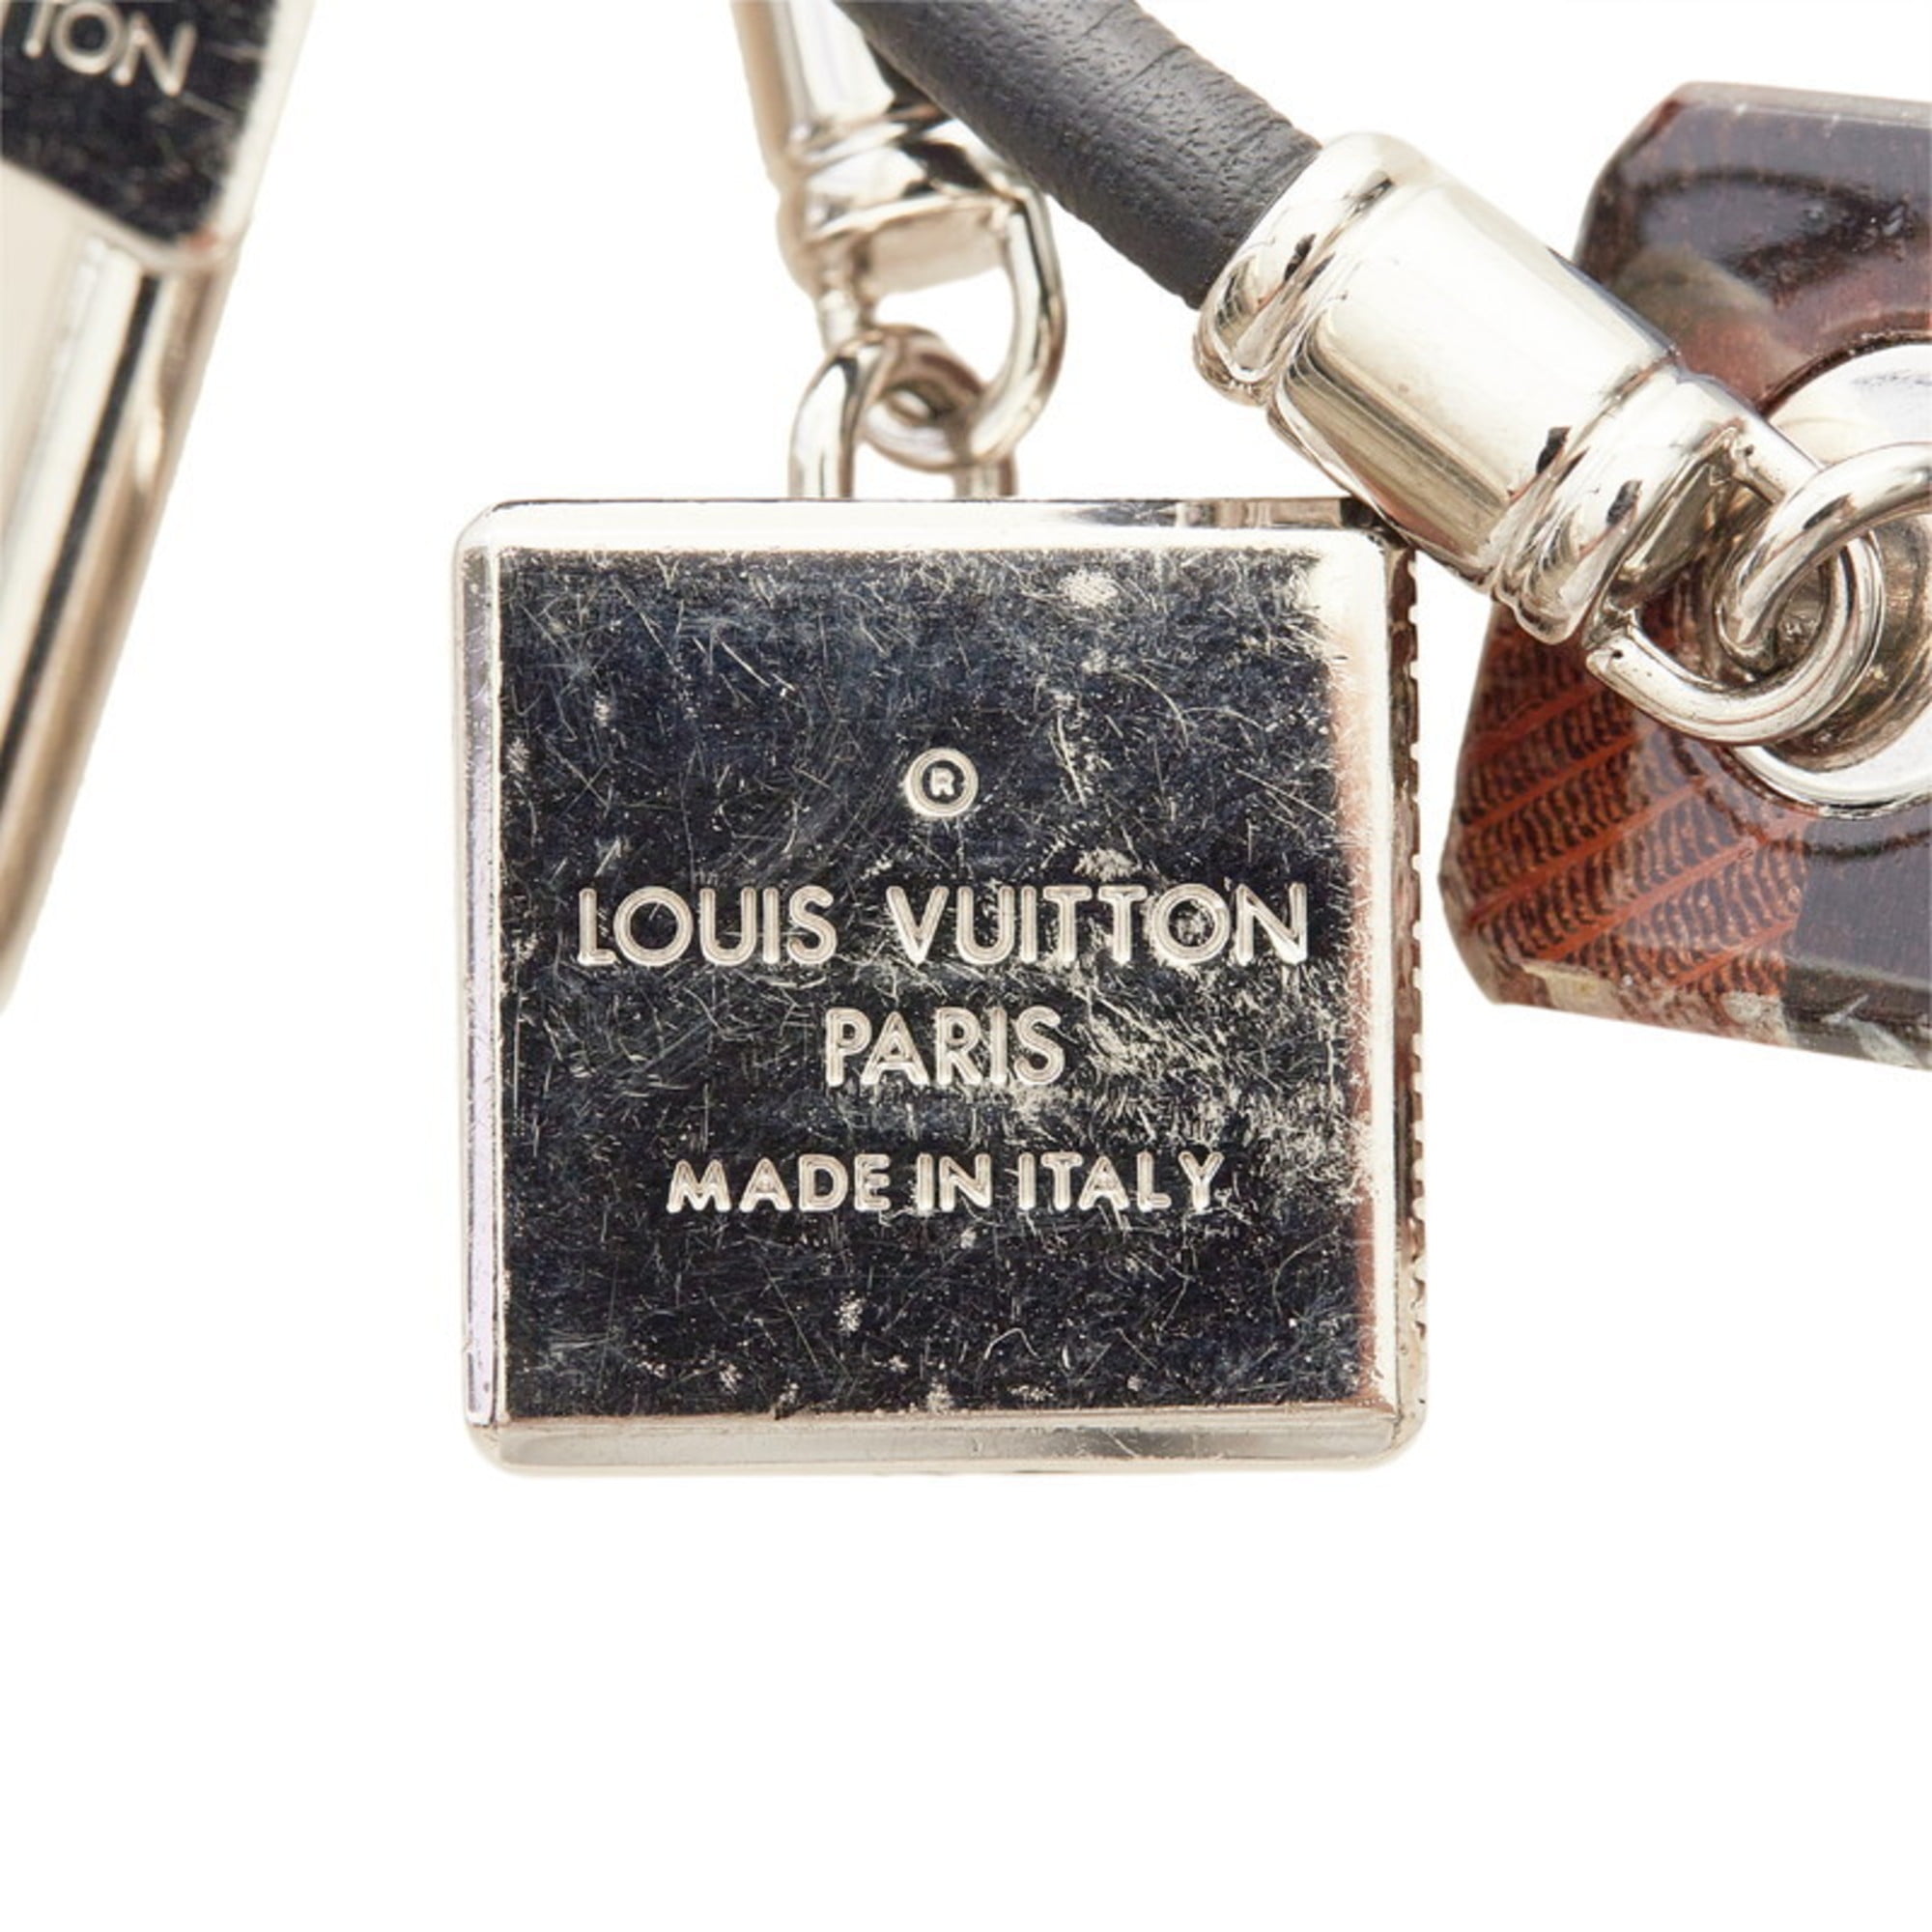 LOUIS VUITTON key ring M67918 Damier Key Ring metal Silver unisex Used –